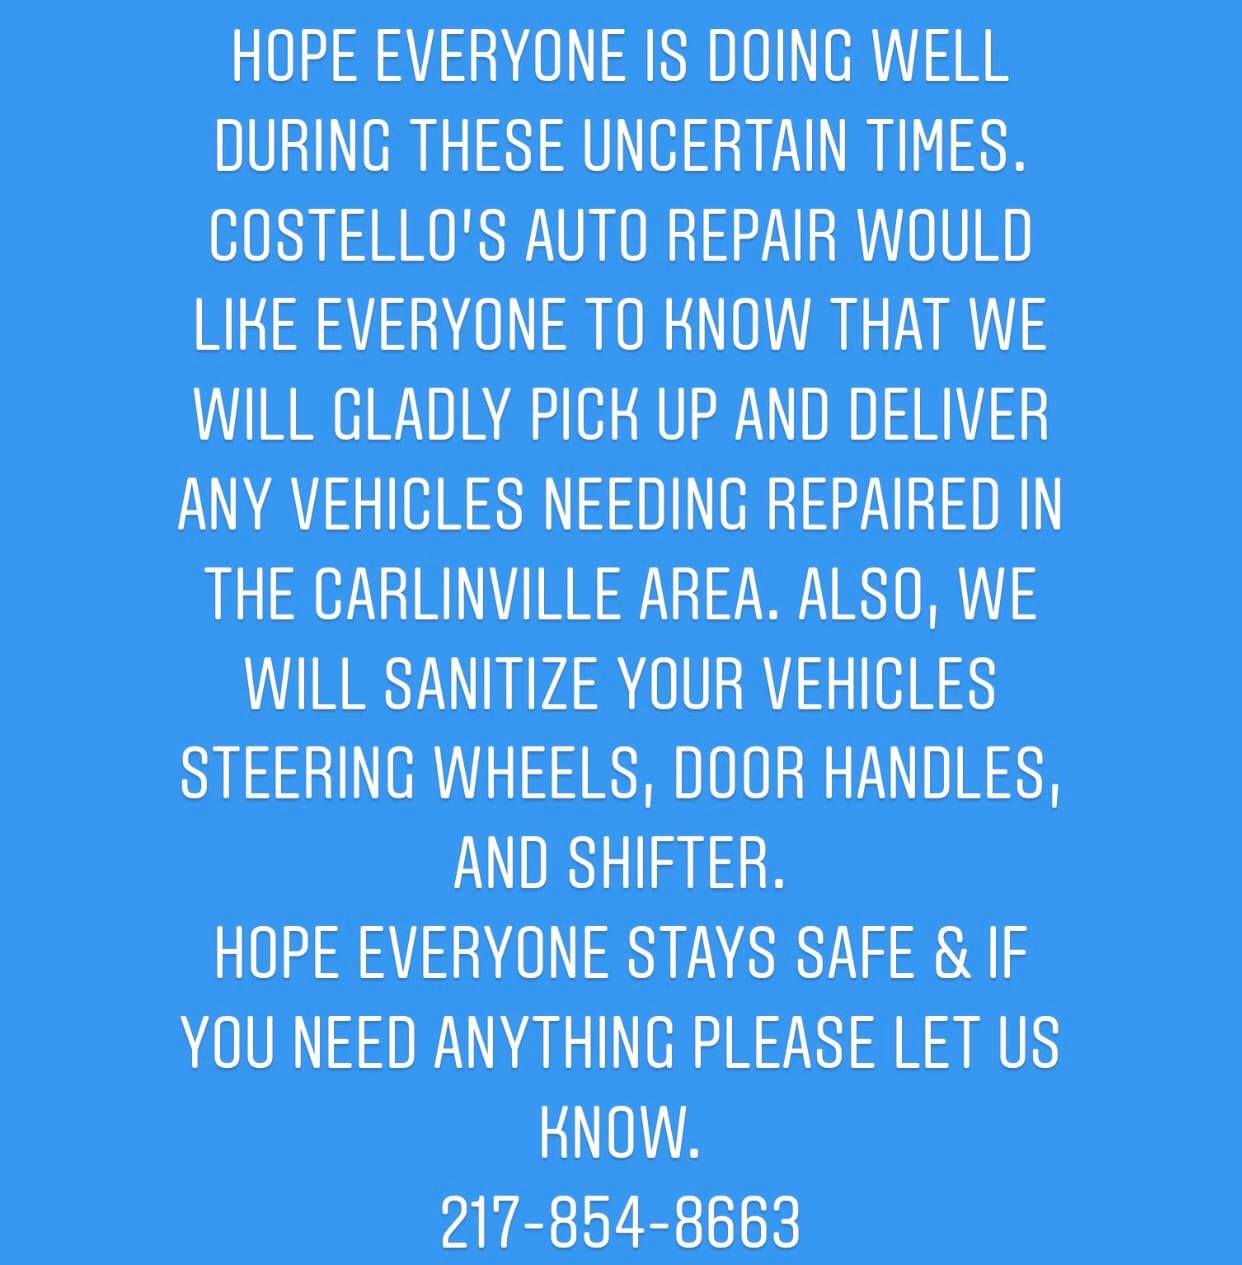 Costello's Automotive Repair